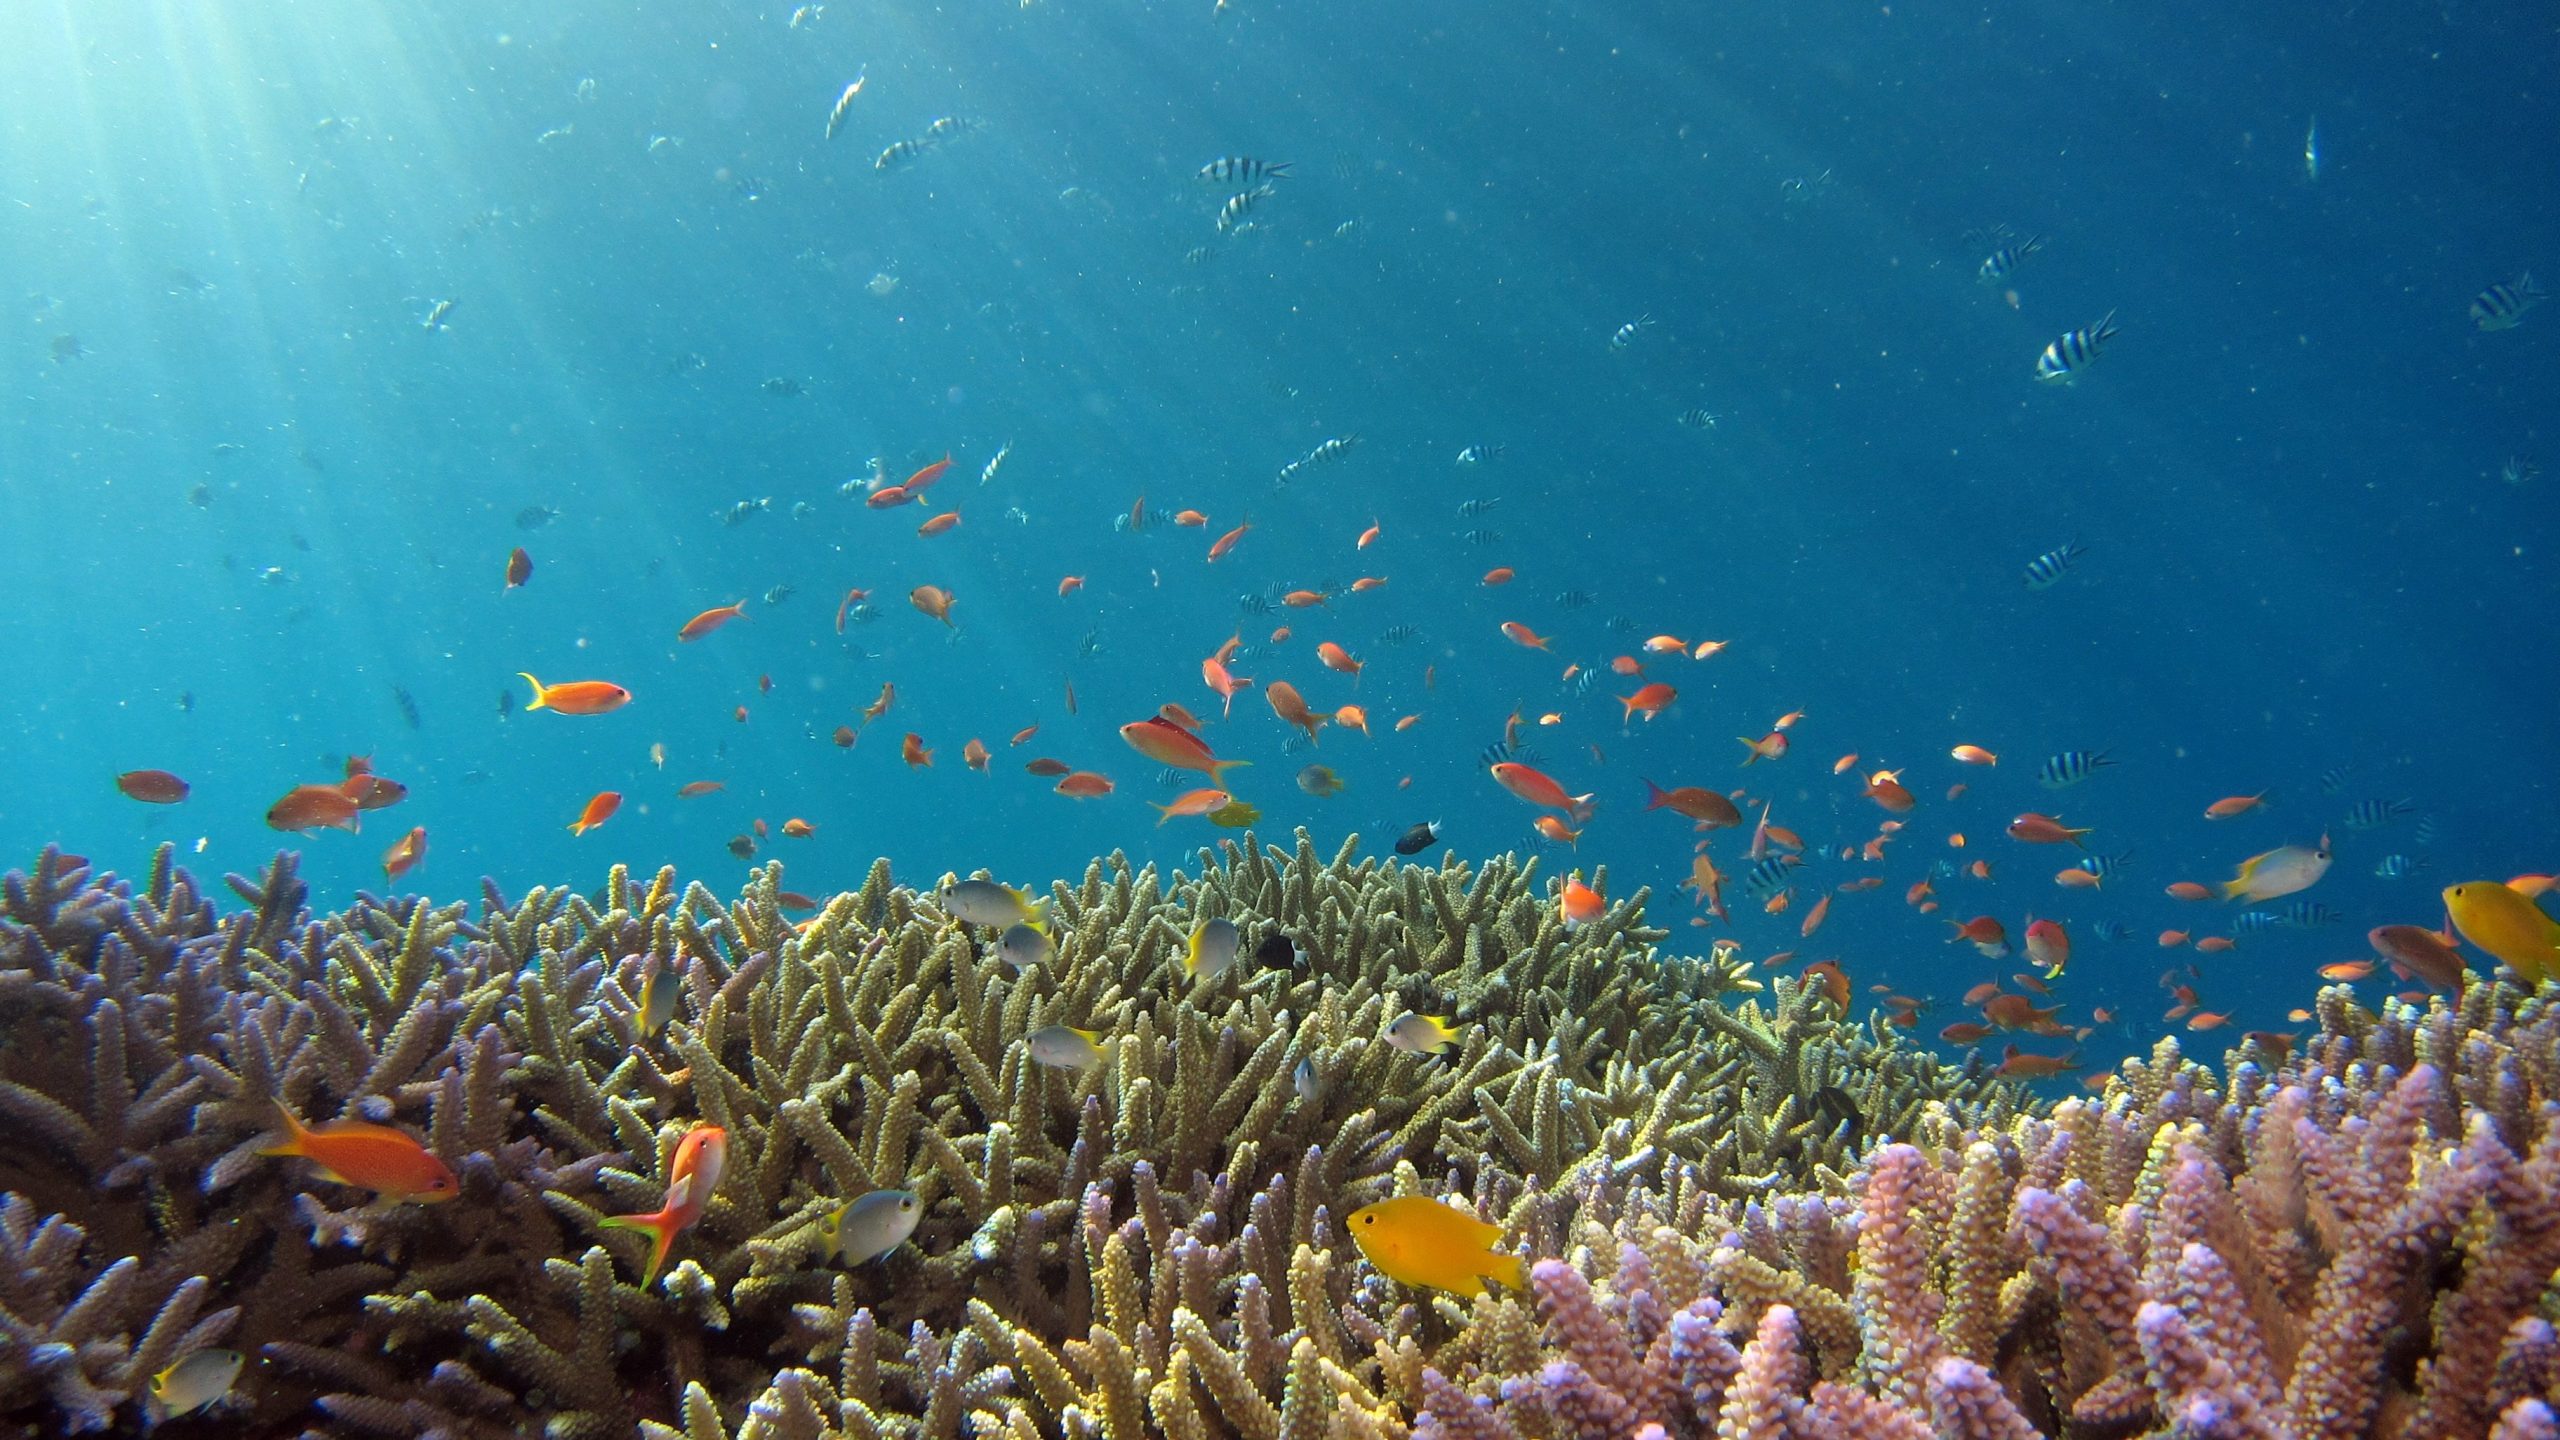 Image of Beautiful reef and orange fish in Okinawa sea by Hiroko Yoshii